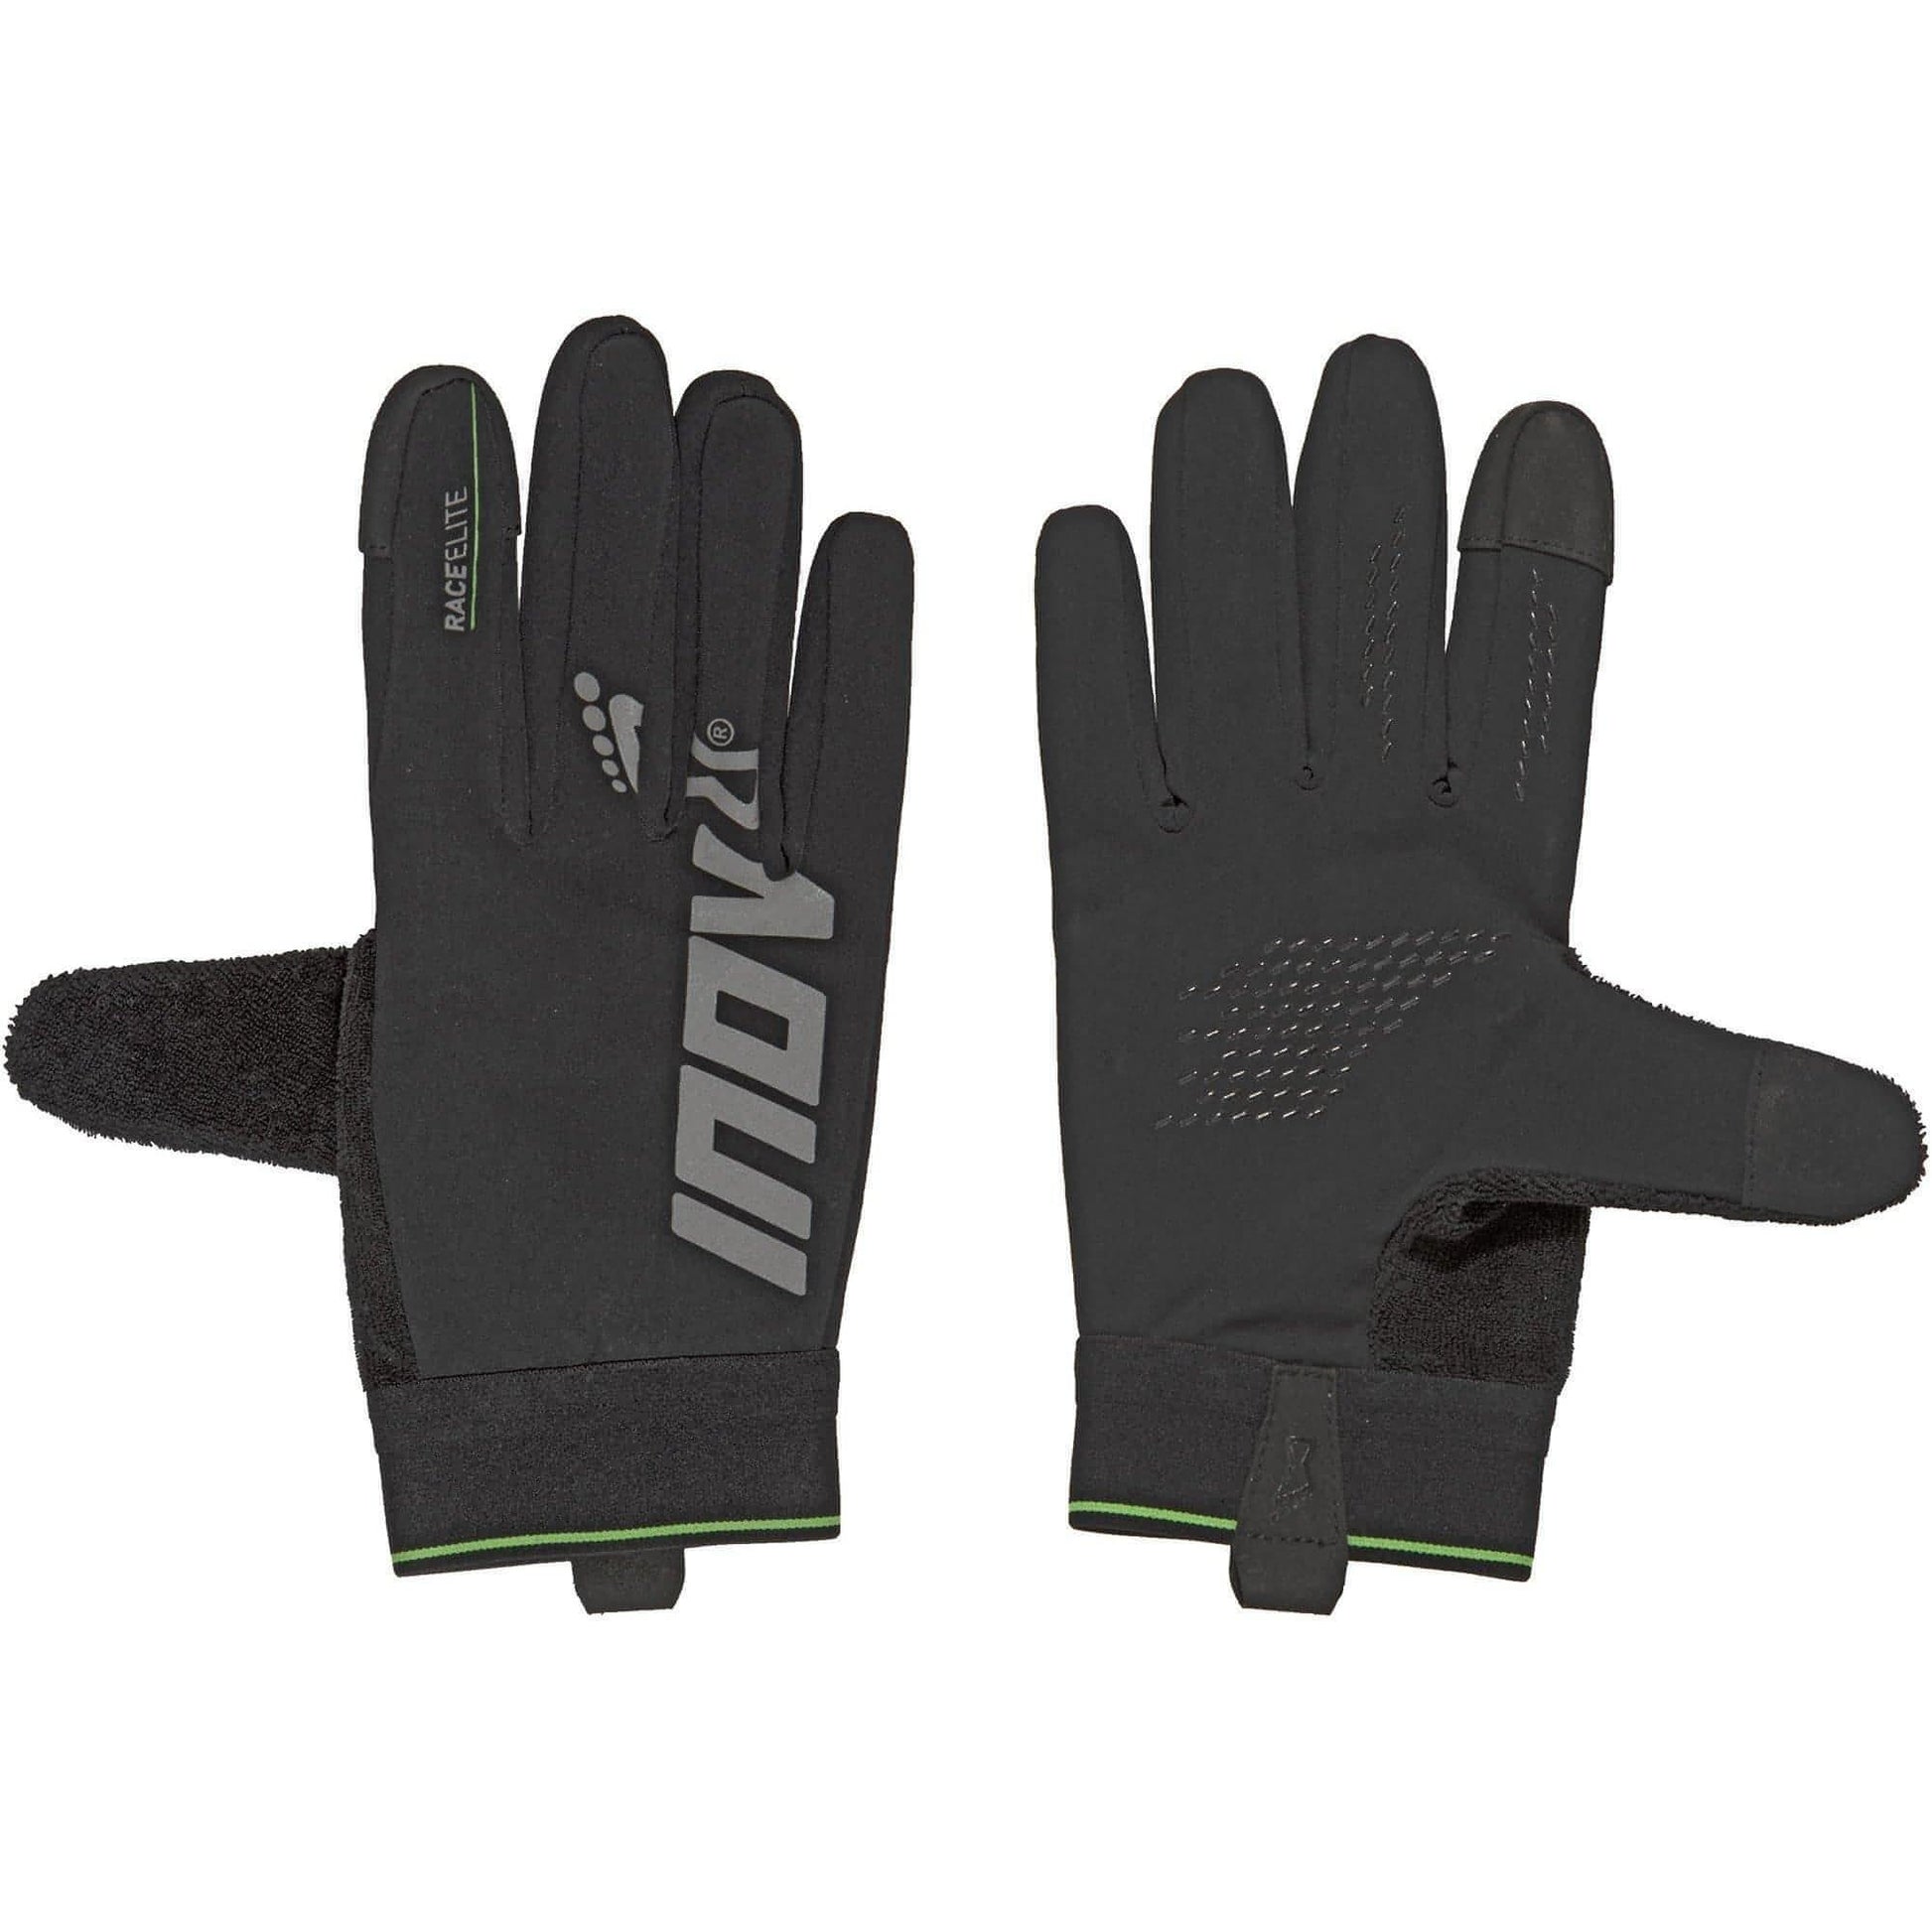 Inov8 Race Elite Running Gloves - Black 5054167643582 - Start Fitness